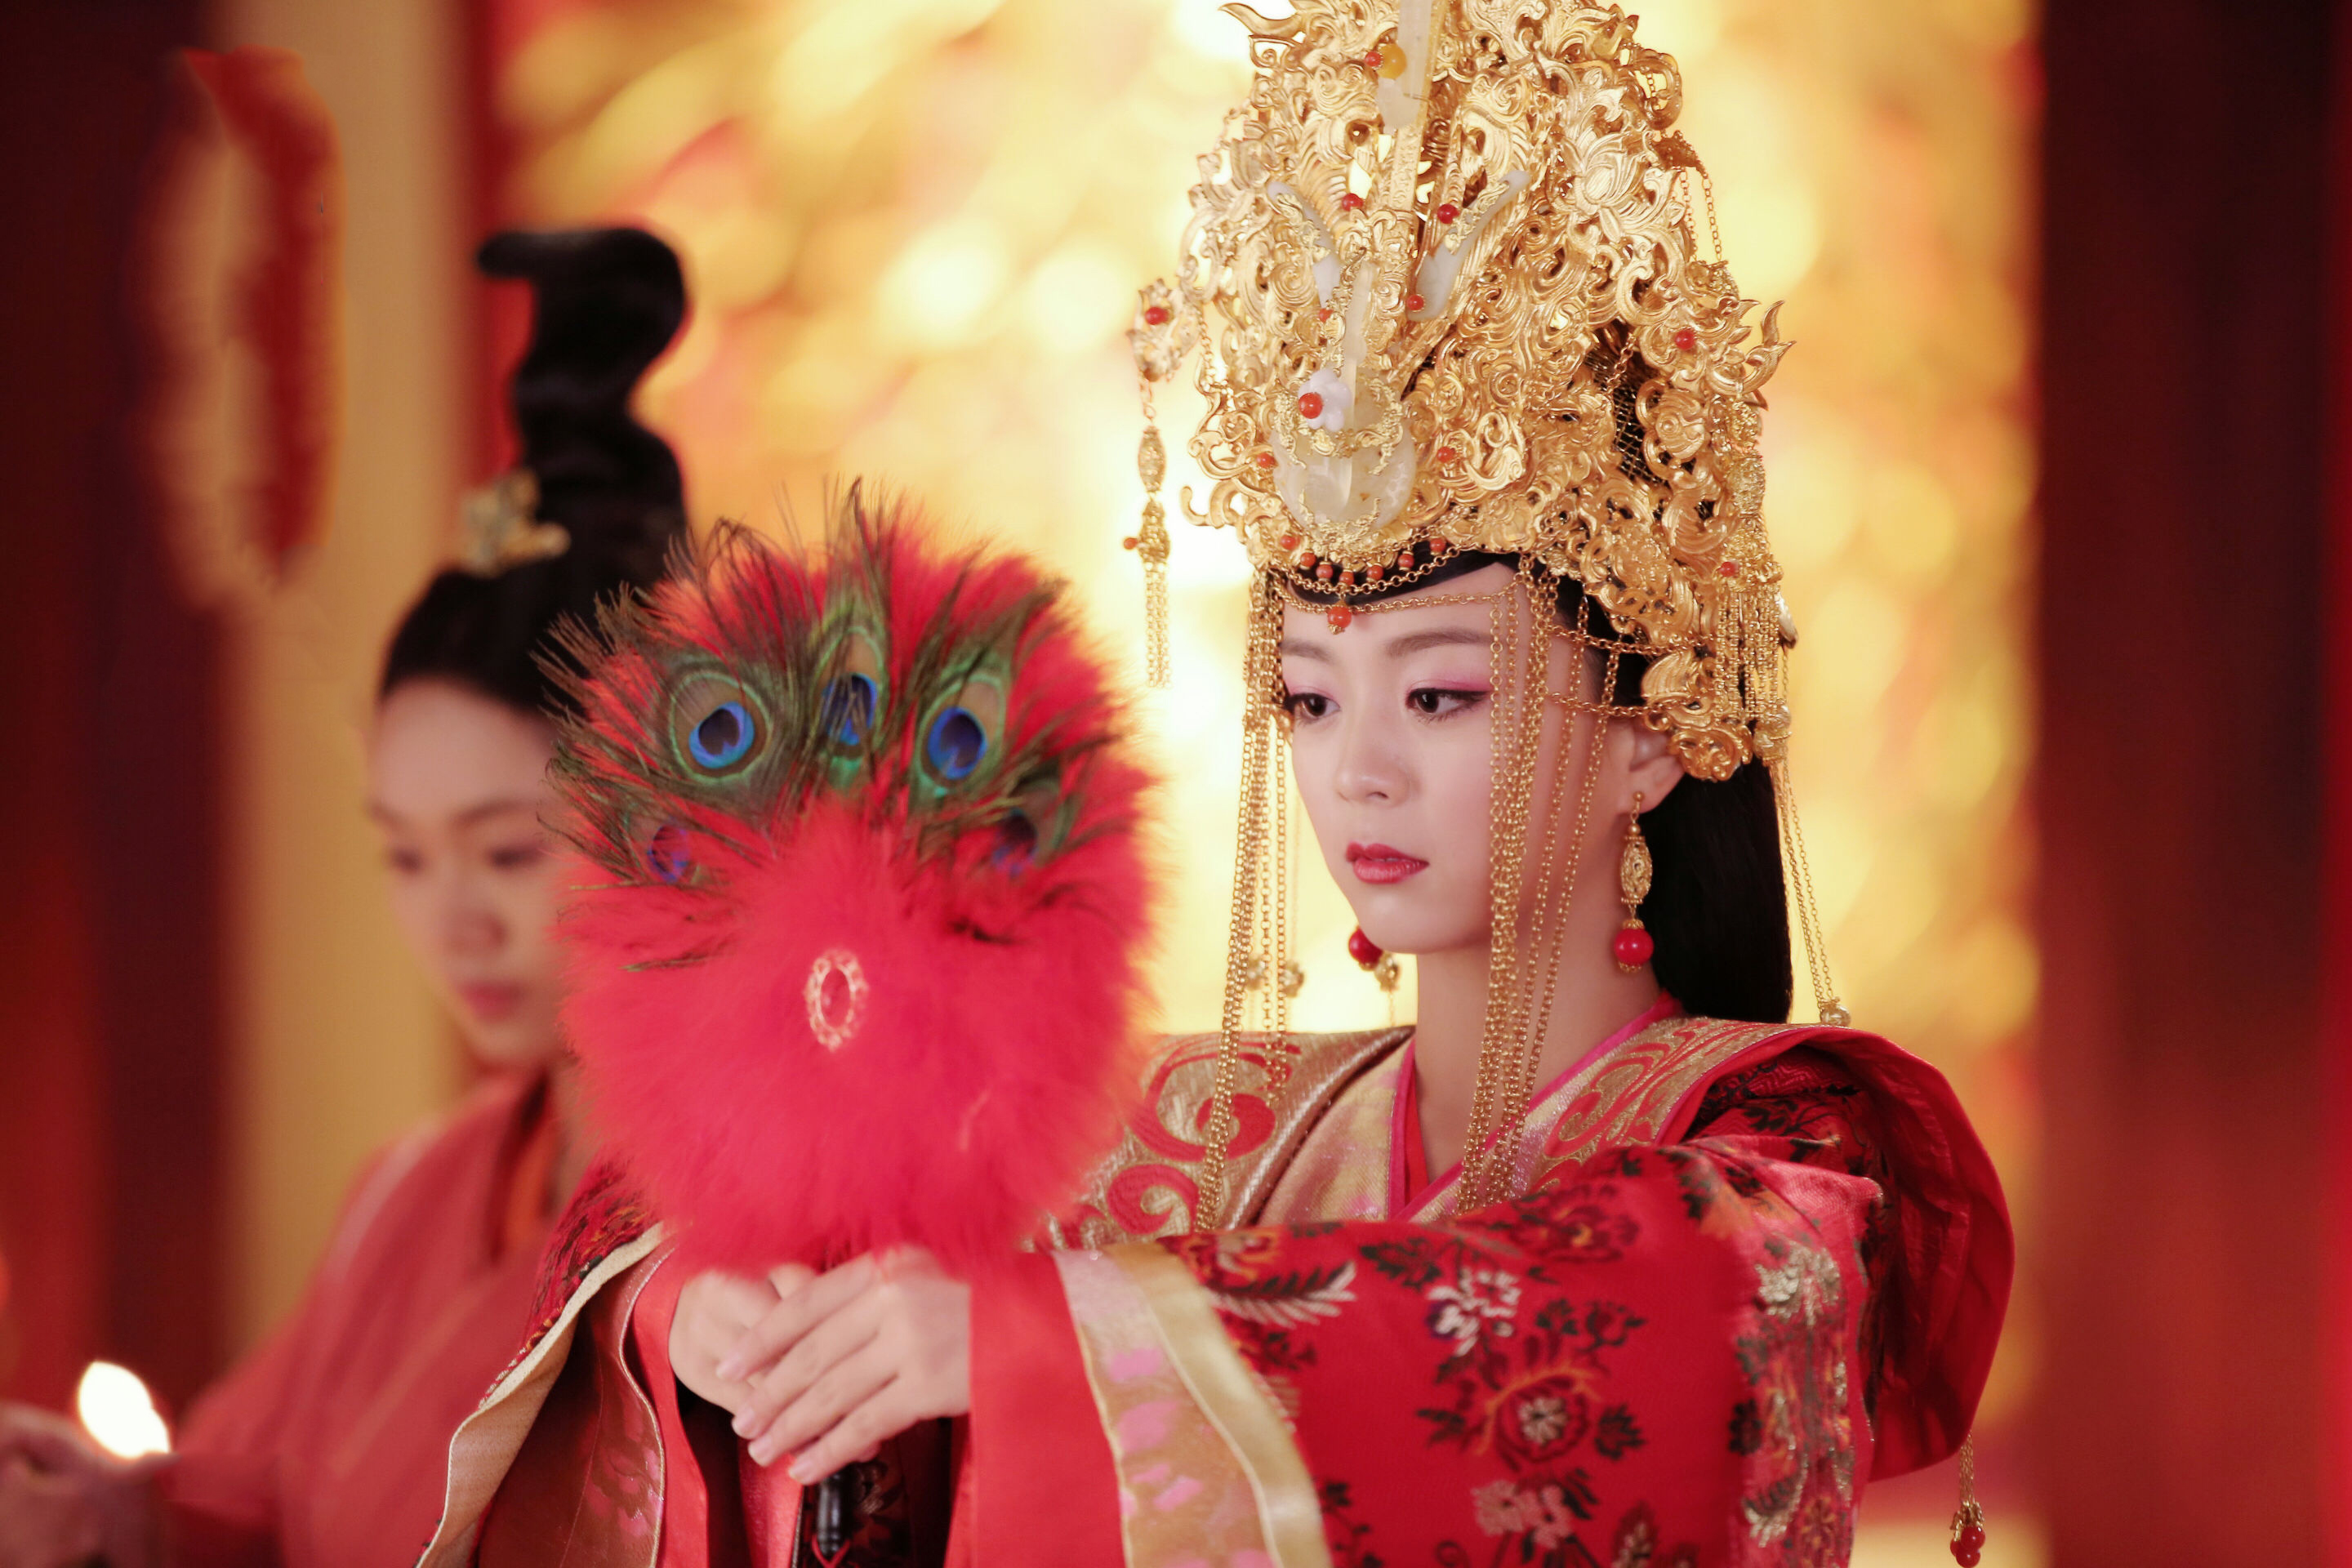 在古装电视剧《独孤天下》中,郜思雯饰演杨丽华一角,是安以轩饰演的